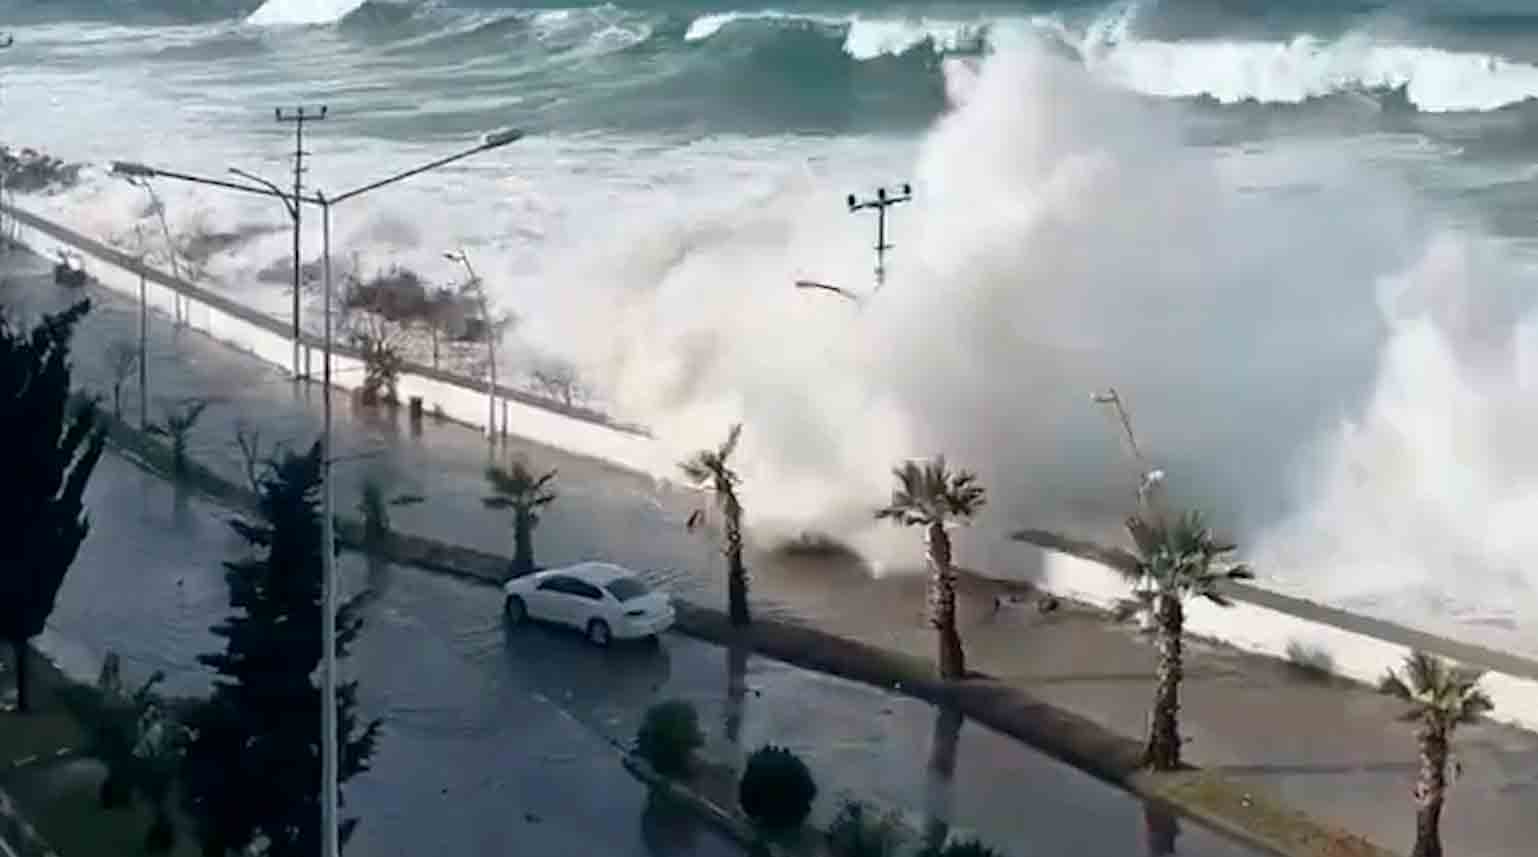 影片顯示巨大波浪襲擊土耳其海岸。照片及影片：Twitter @volcaholic1